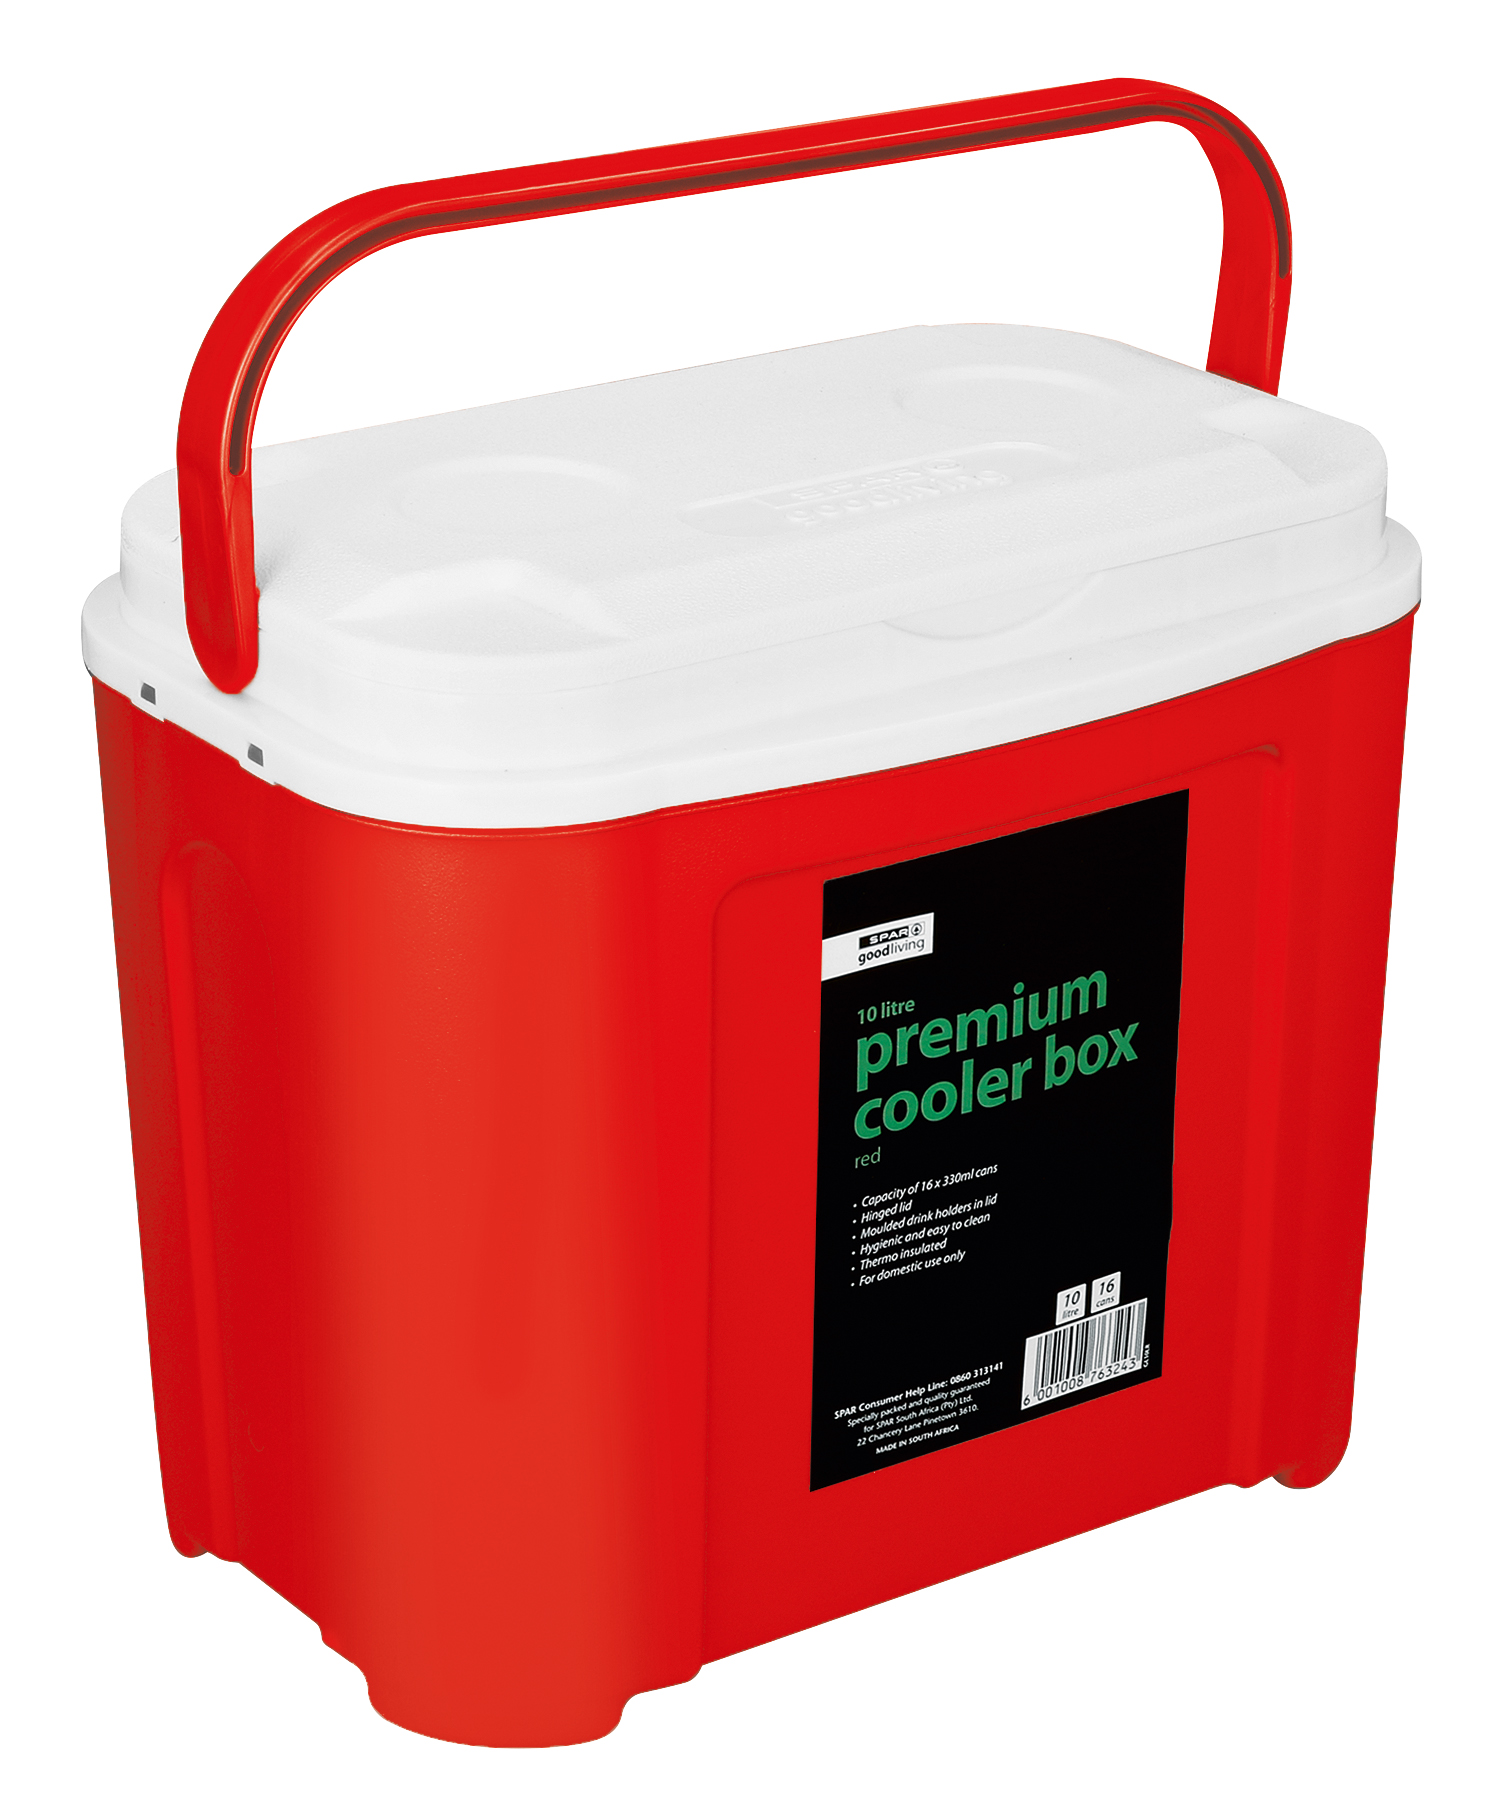 premium cooler box 10 litre (red)